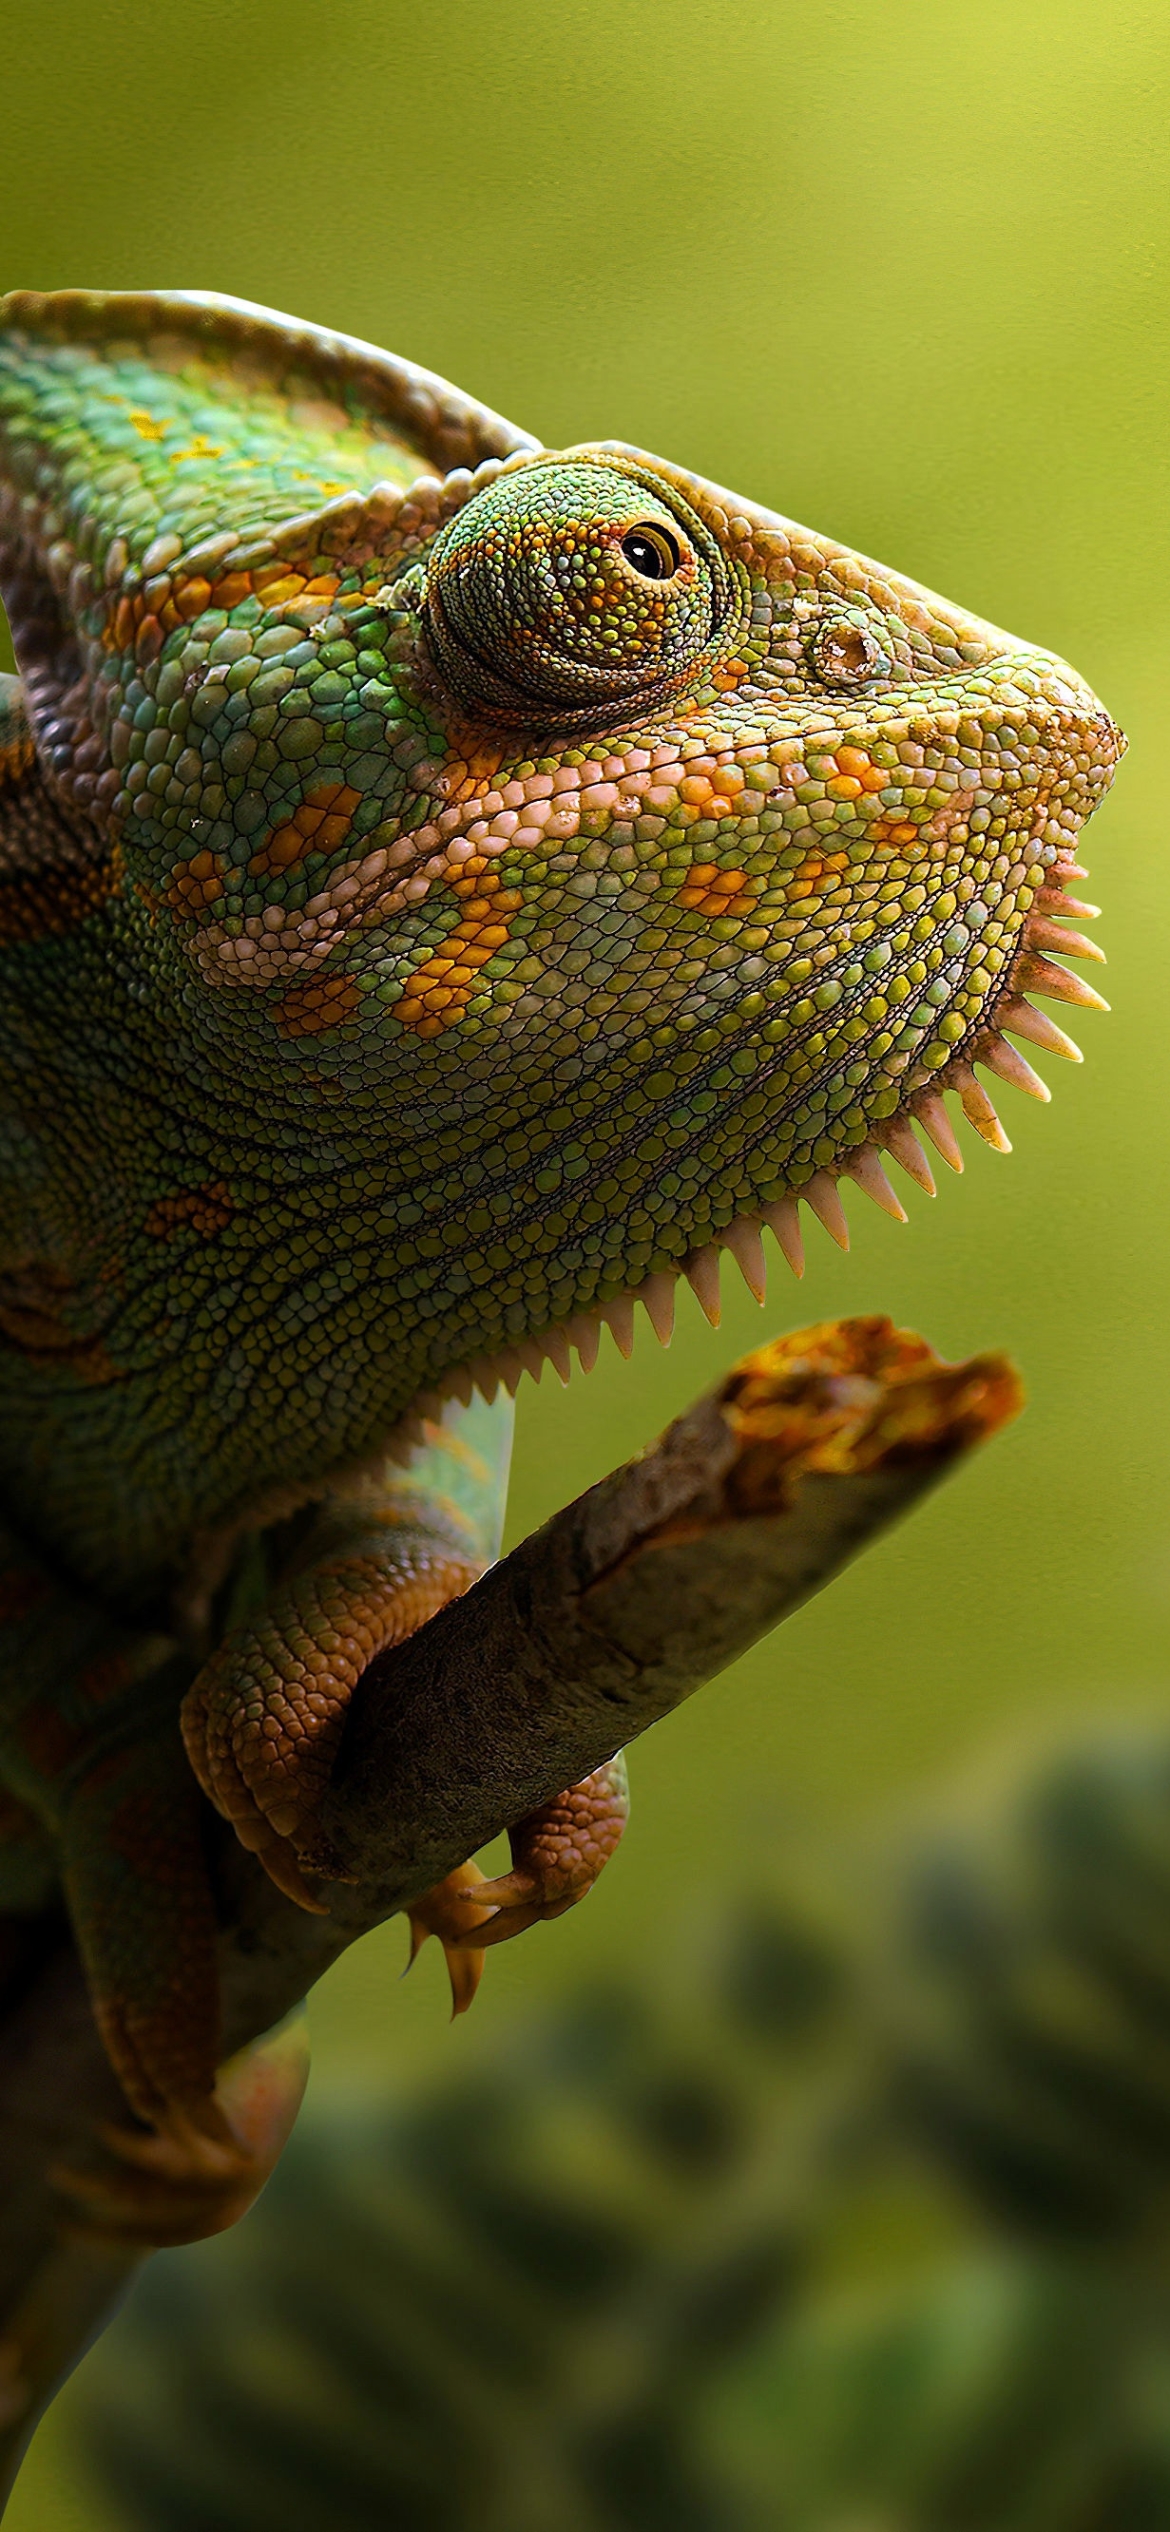 Descarga gratuita de fondo de pantalla para móvil de Animales, Lagarto, Reptil, Camaleón, Reptiles.